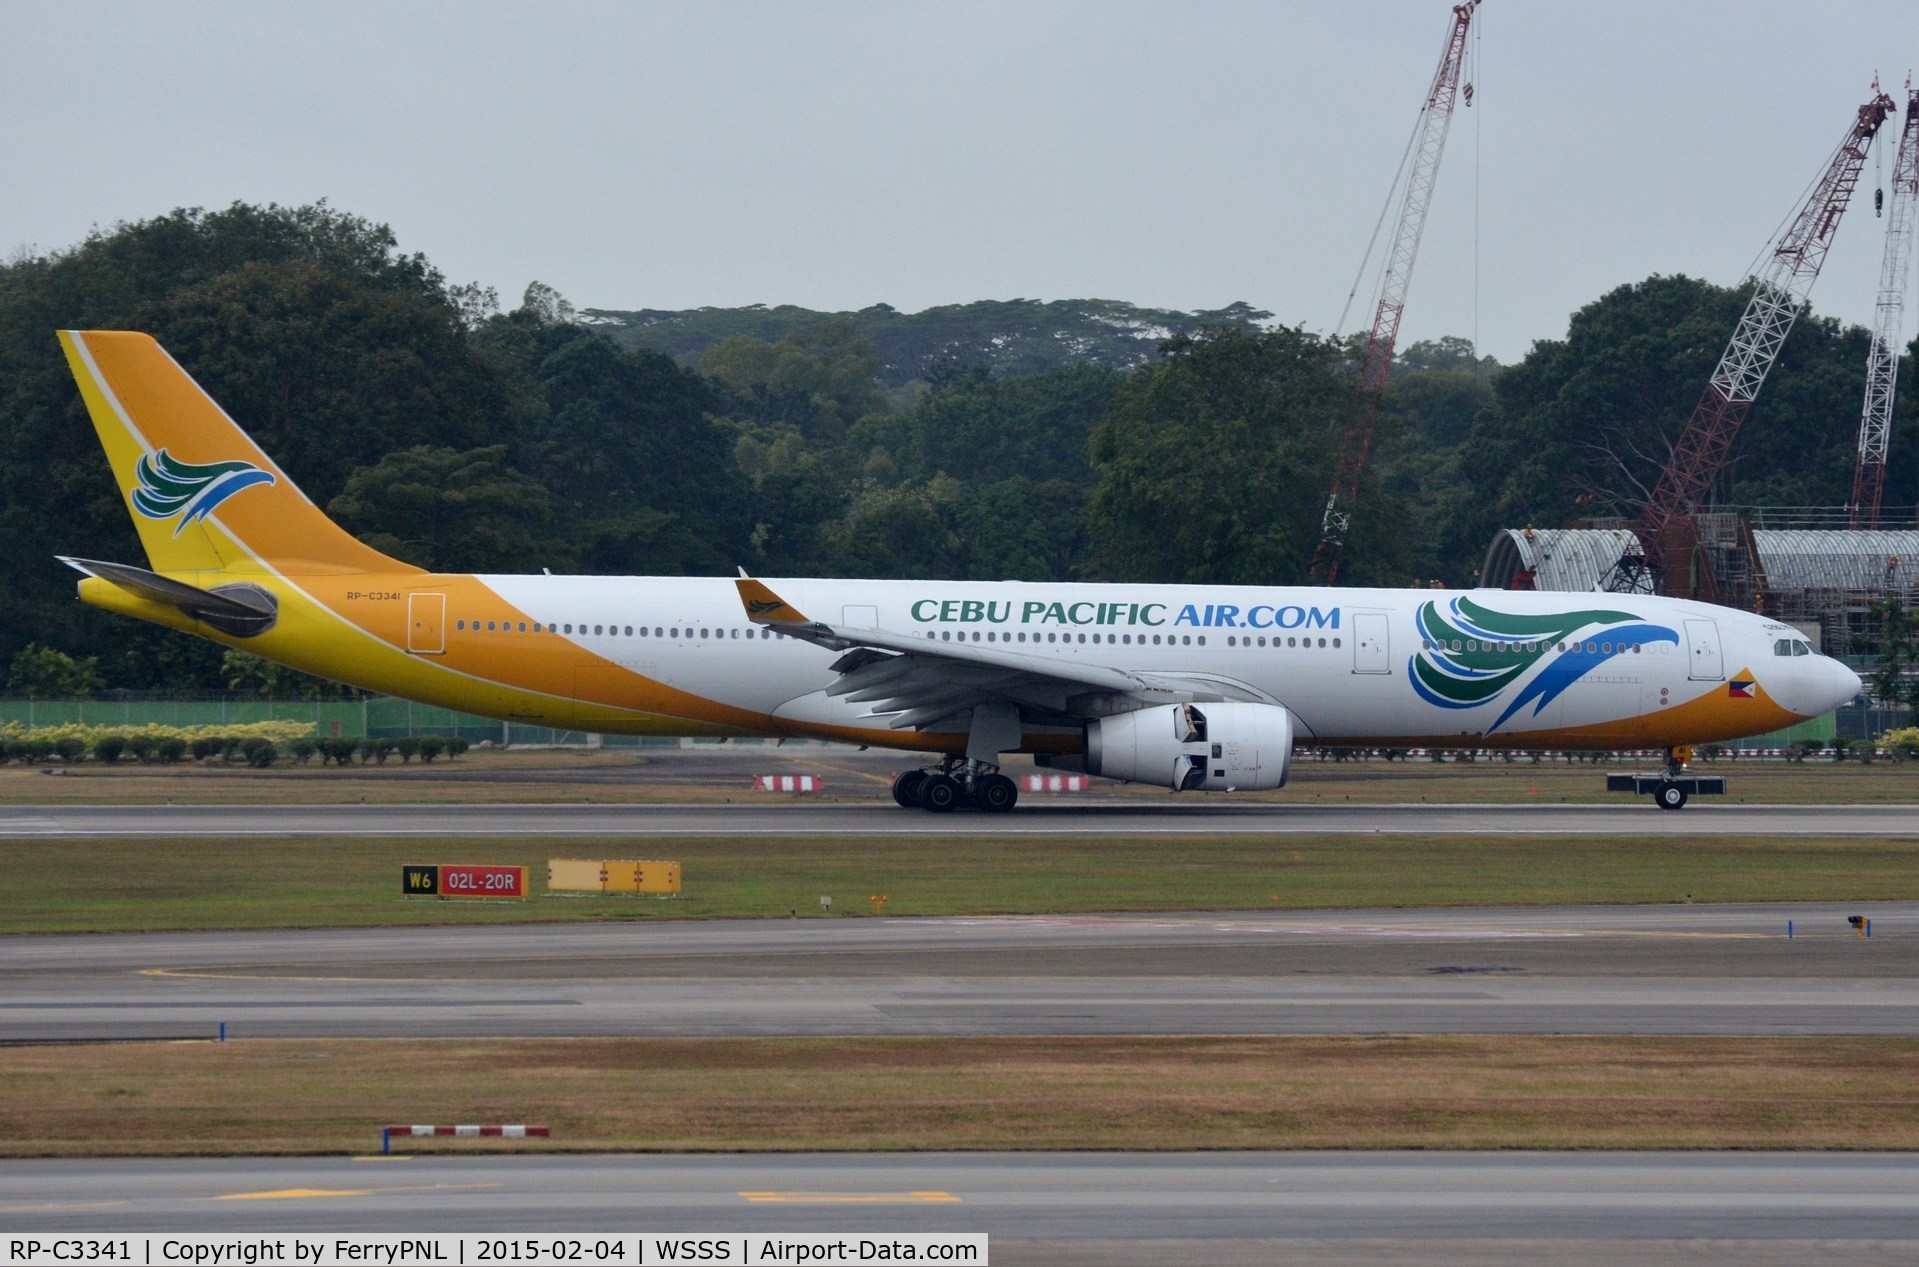 RP-C3341, 2013 Airbus A330-343X C/N 1420, Cebu A333 coming to a halt.